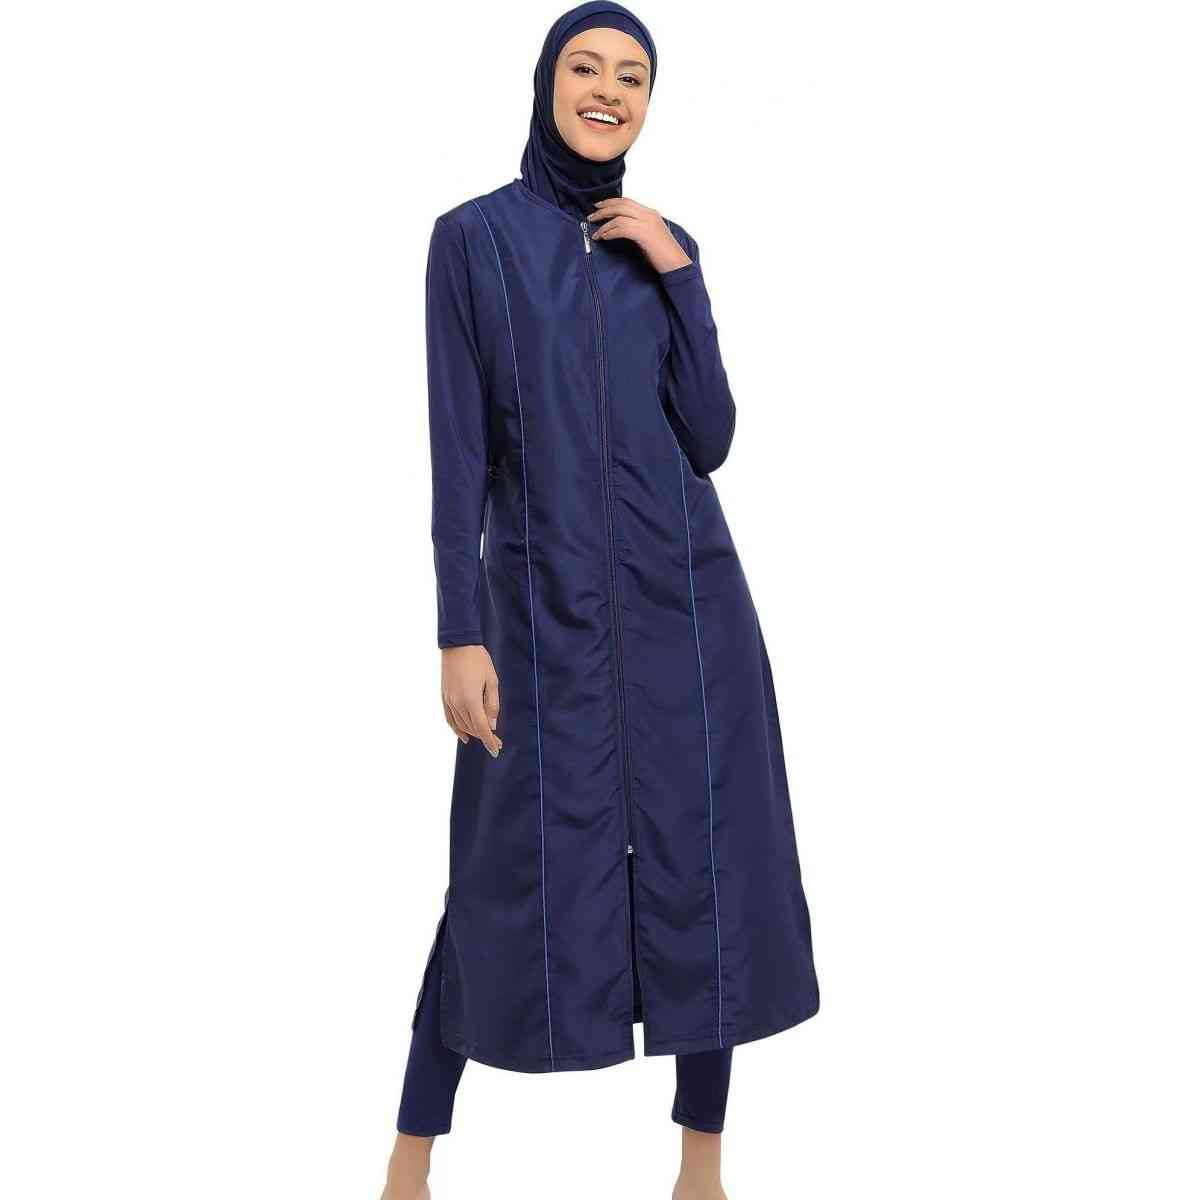 Manches longues micro complet burkini maillot de bain musulman hijab maillot de bain islamique mode femmes couverture complète - lacivert / l